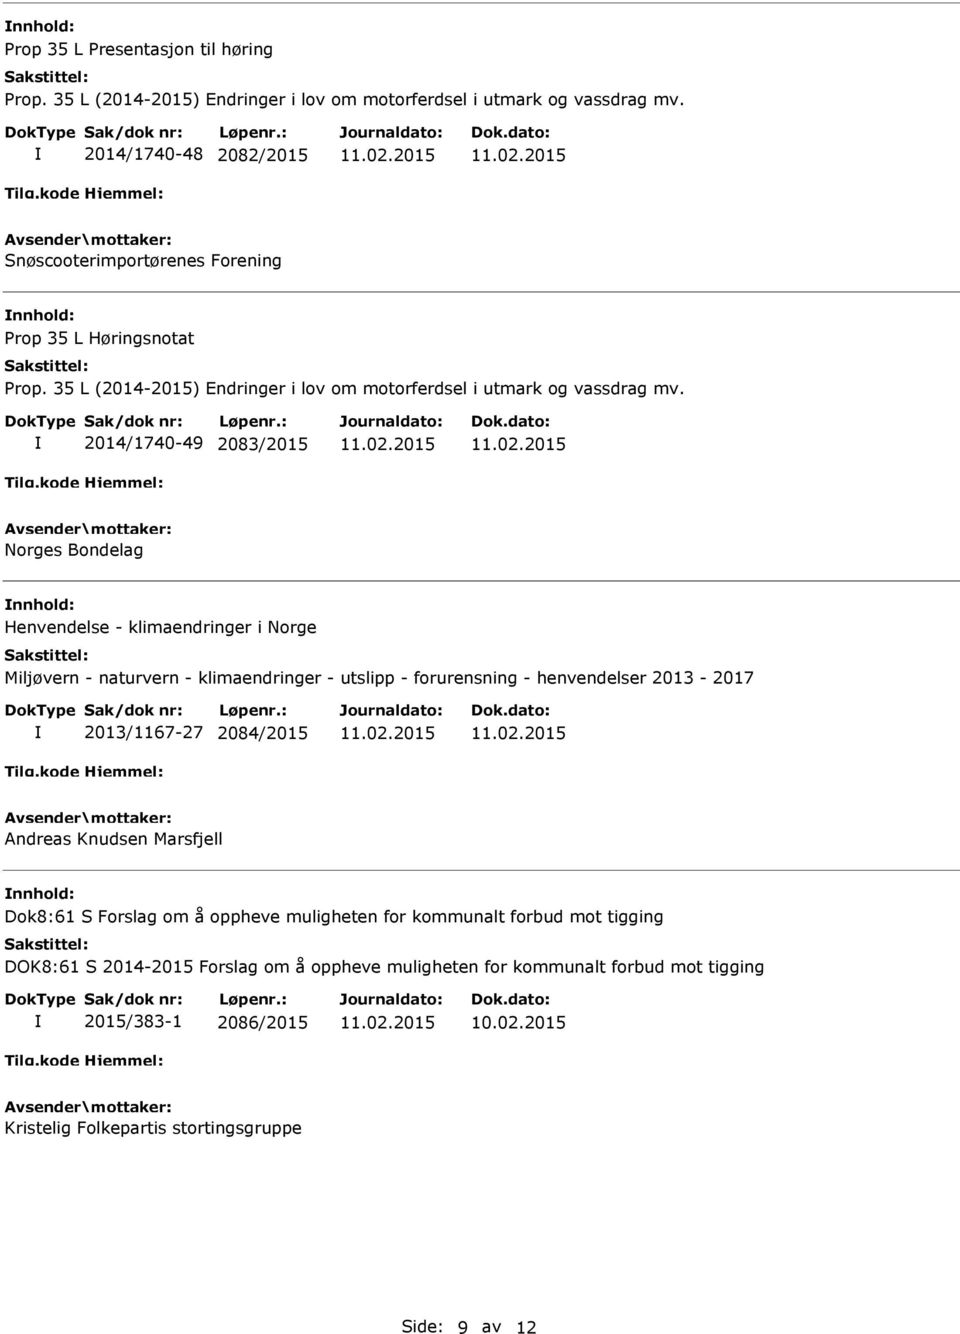 2014/1740-49 2083/2015 Norges Bondelag Henvendelse - klimaendringer i Norge Miljøvern - naturvern - klimaendringer - utslipp - forurensning - henvendelser 2013-2017 2013/1167-27